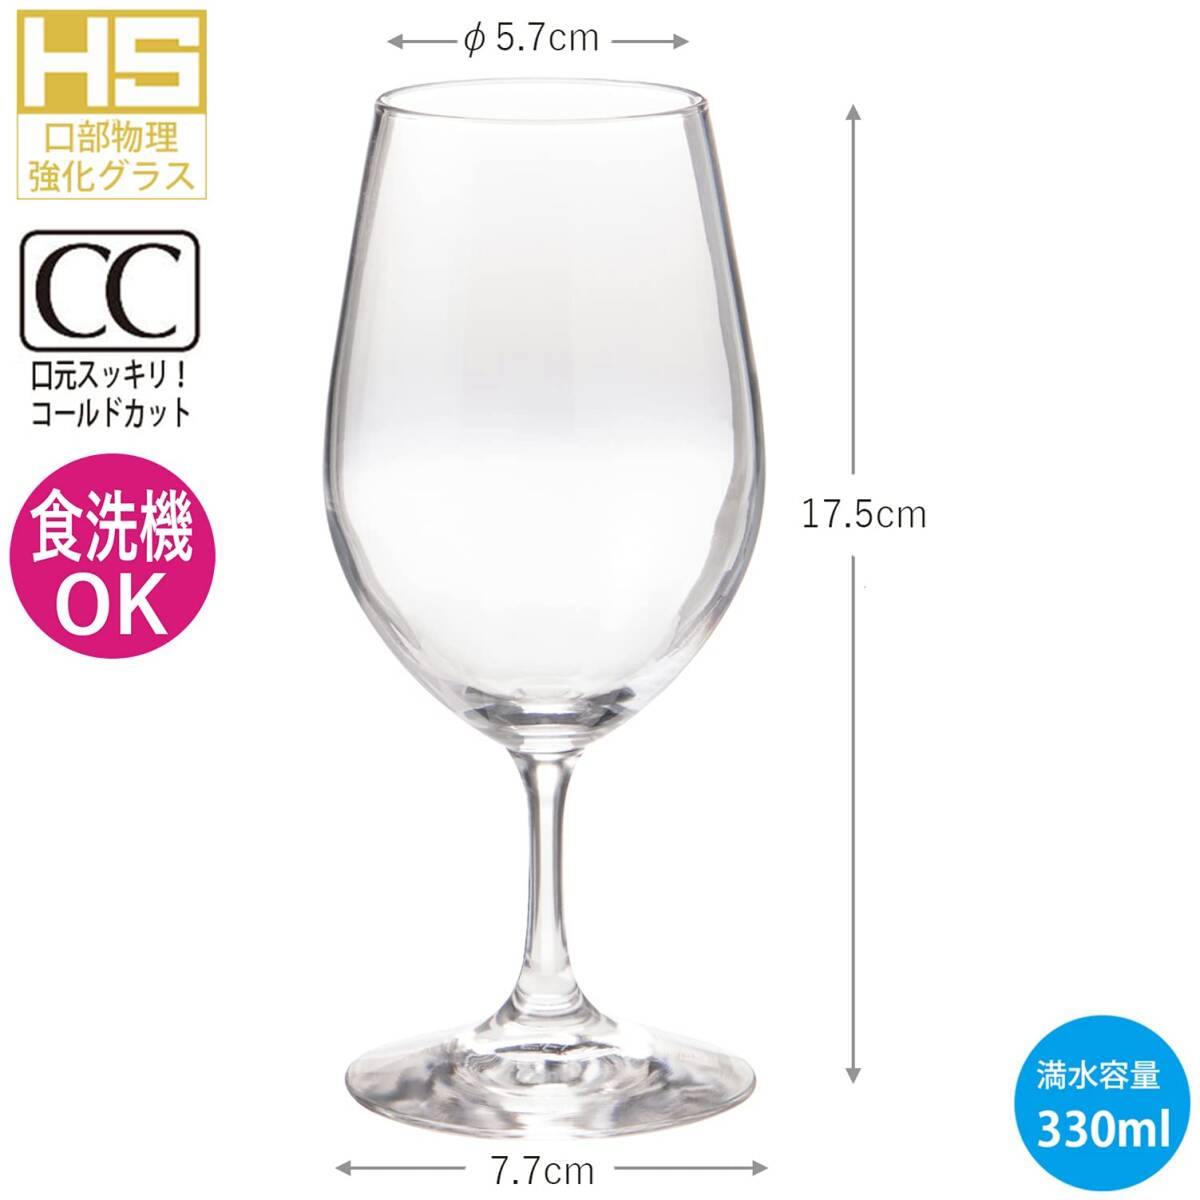 東洋佐々木ガラス ワイングラス レセプション ワイン 330ml 口部物理強化グラス 赤・白対応 割れにくい 日本製 食洗器対応 おしゃれ 30_画像3